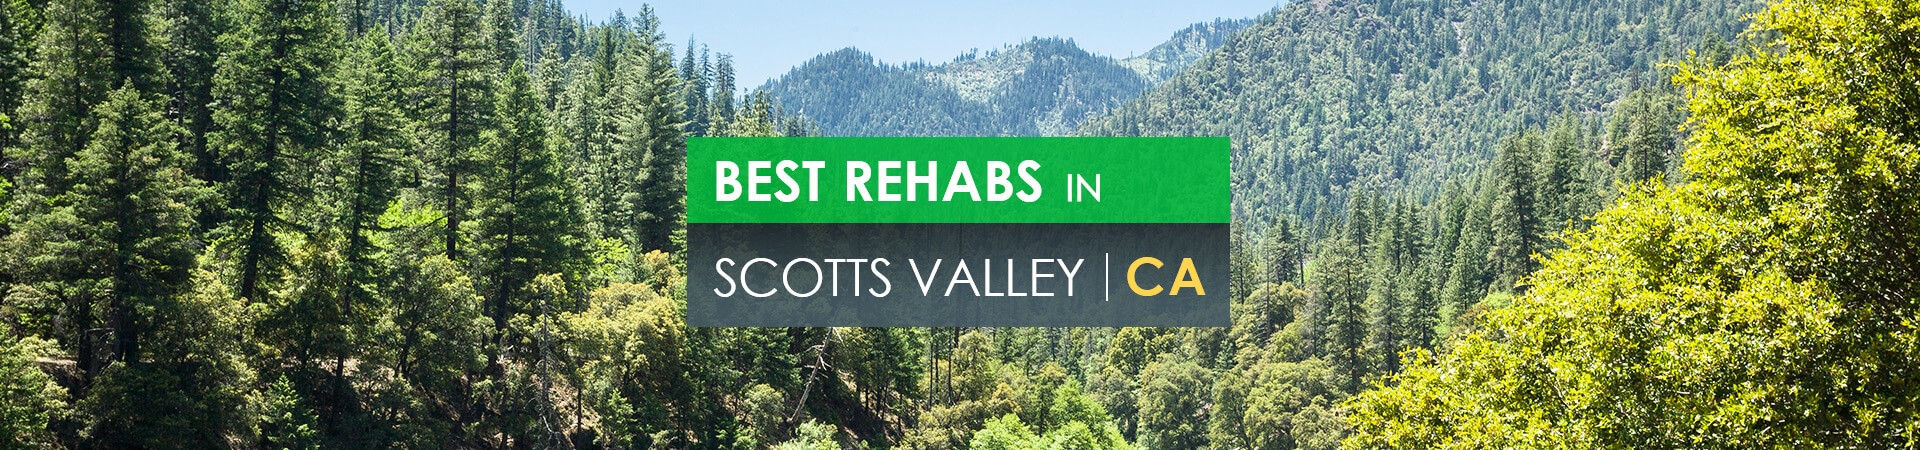 Best rehabs in Scotts Valley, CA